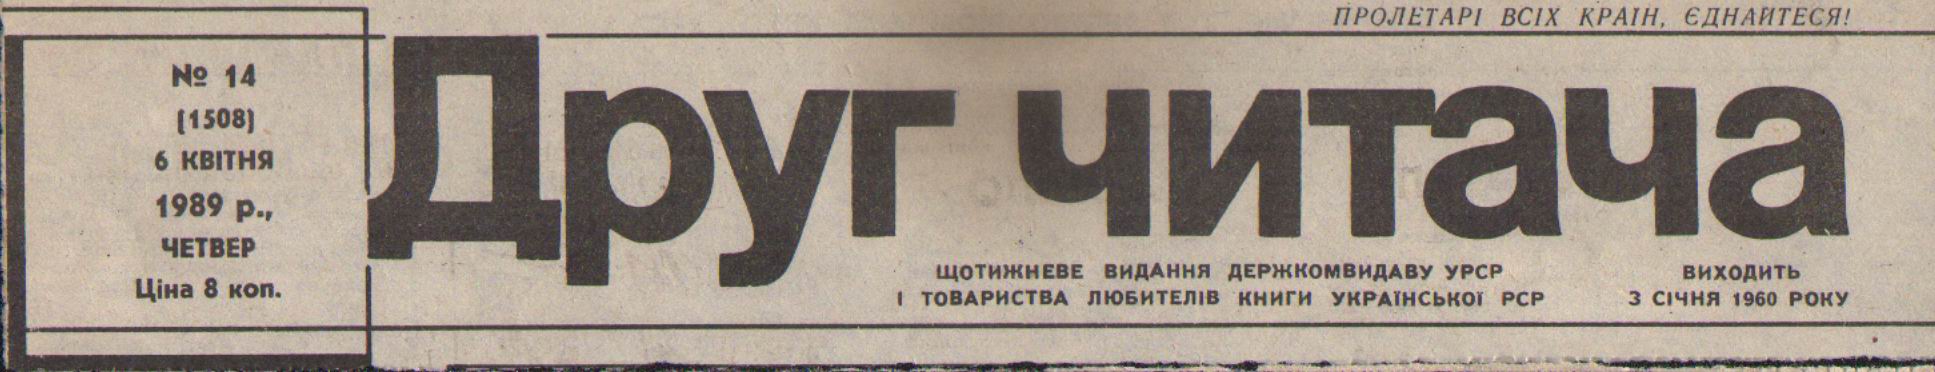 Газеты Украины Знакомства